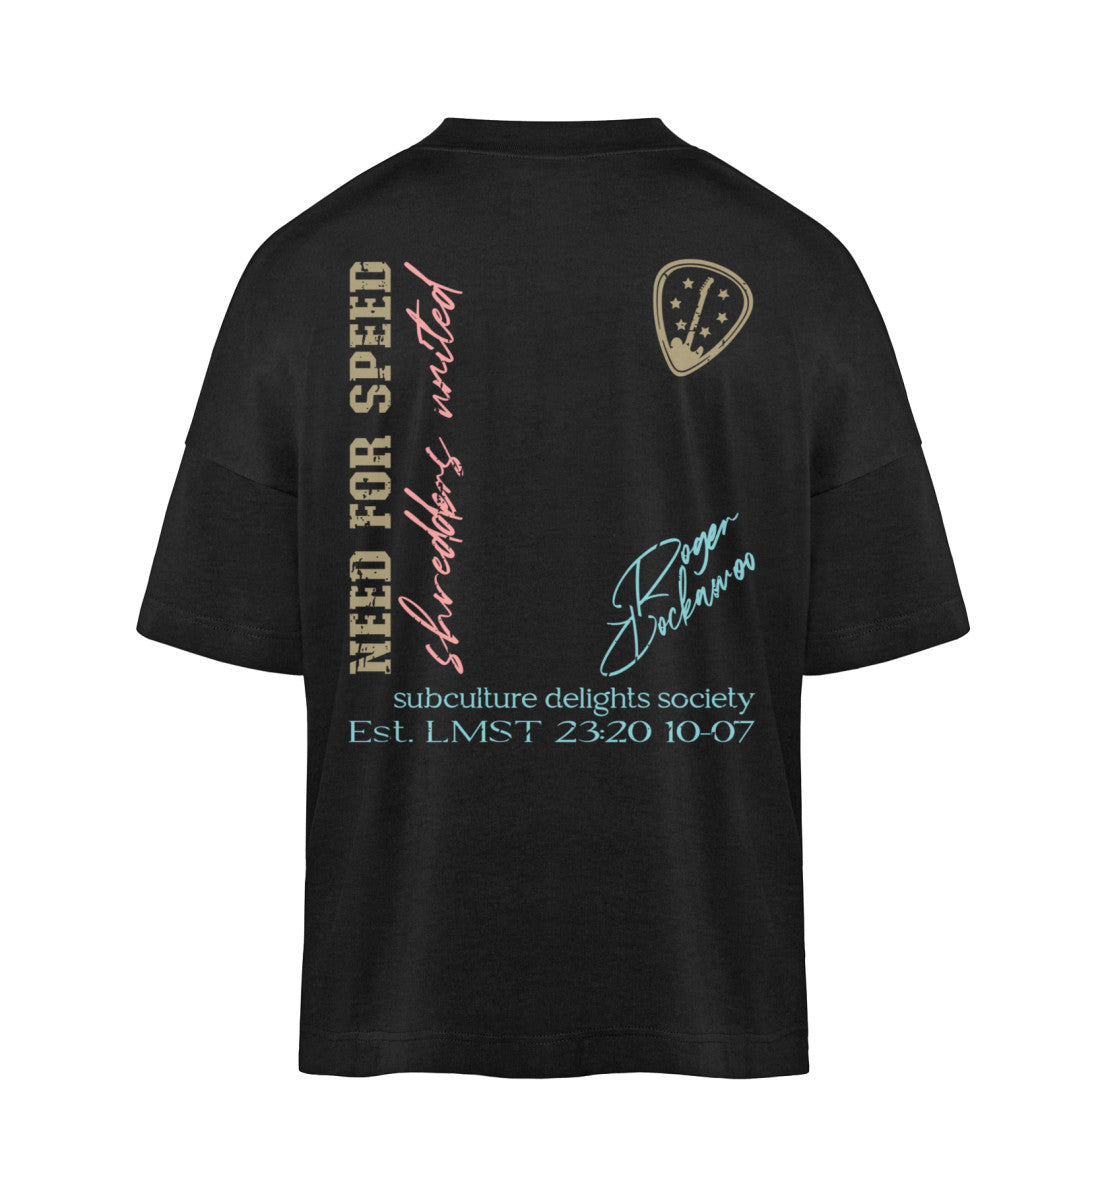 Schwarzes T-Shirt Unisex Oversize Fit für Frauen und Männer bedruckt mit dem Design der Roger Rockawoo Clothing Guitar need for speed